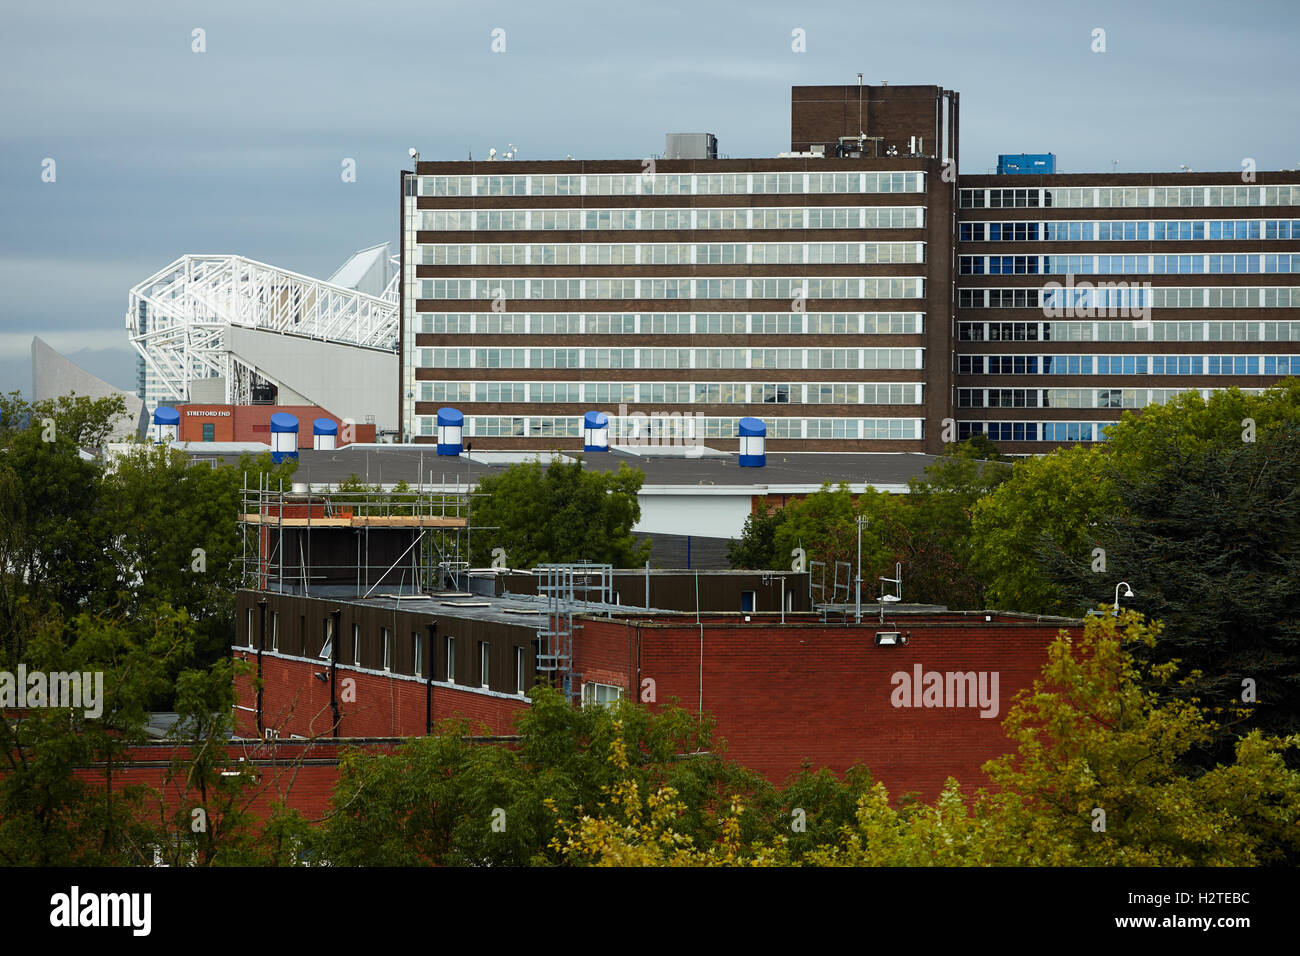 Büro das Stadion Old Trafford Skyline zeigt Mischung aus Büros und der Fußball-Club steht Exemplar Stockfoto